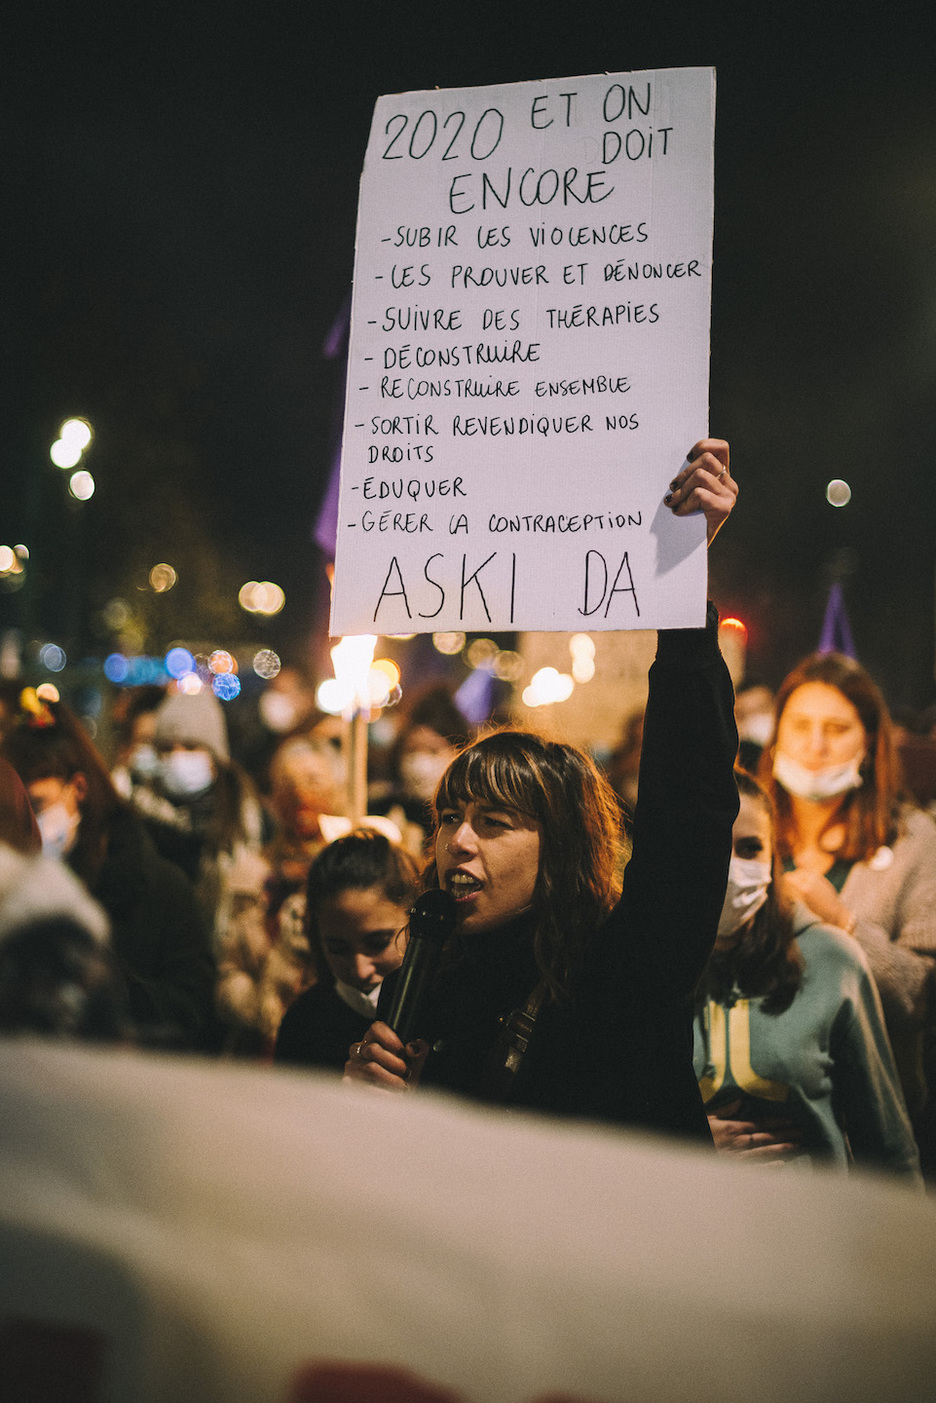 Les collectifs féministes du Pays Basque sont inquiètes du sort réservé aux femmes en 2020. © Guillaume FAUVEAU.